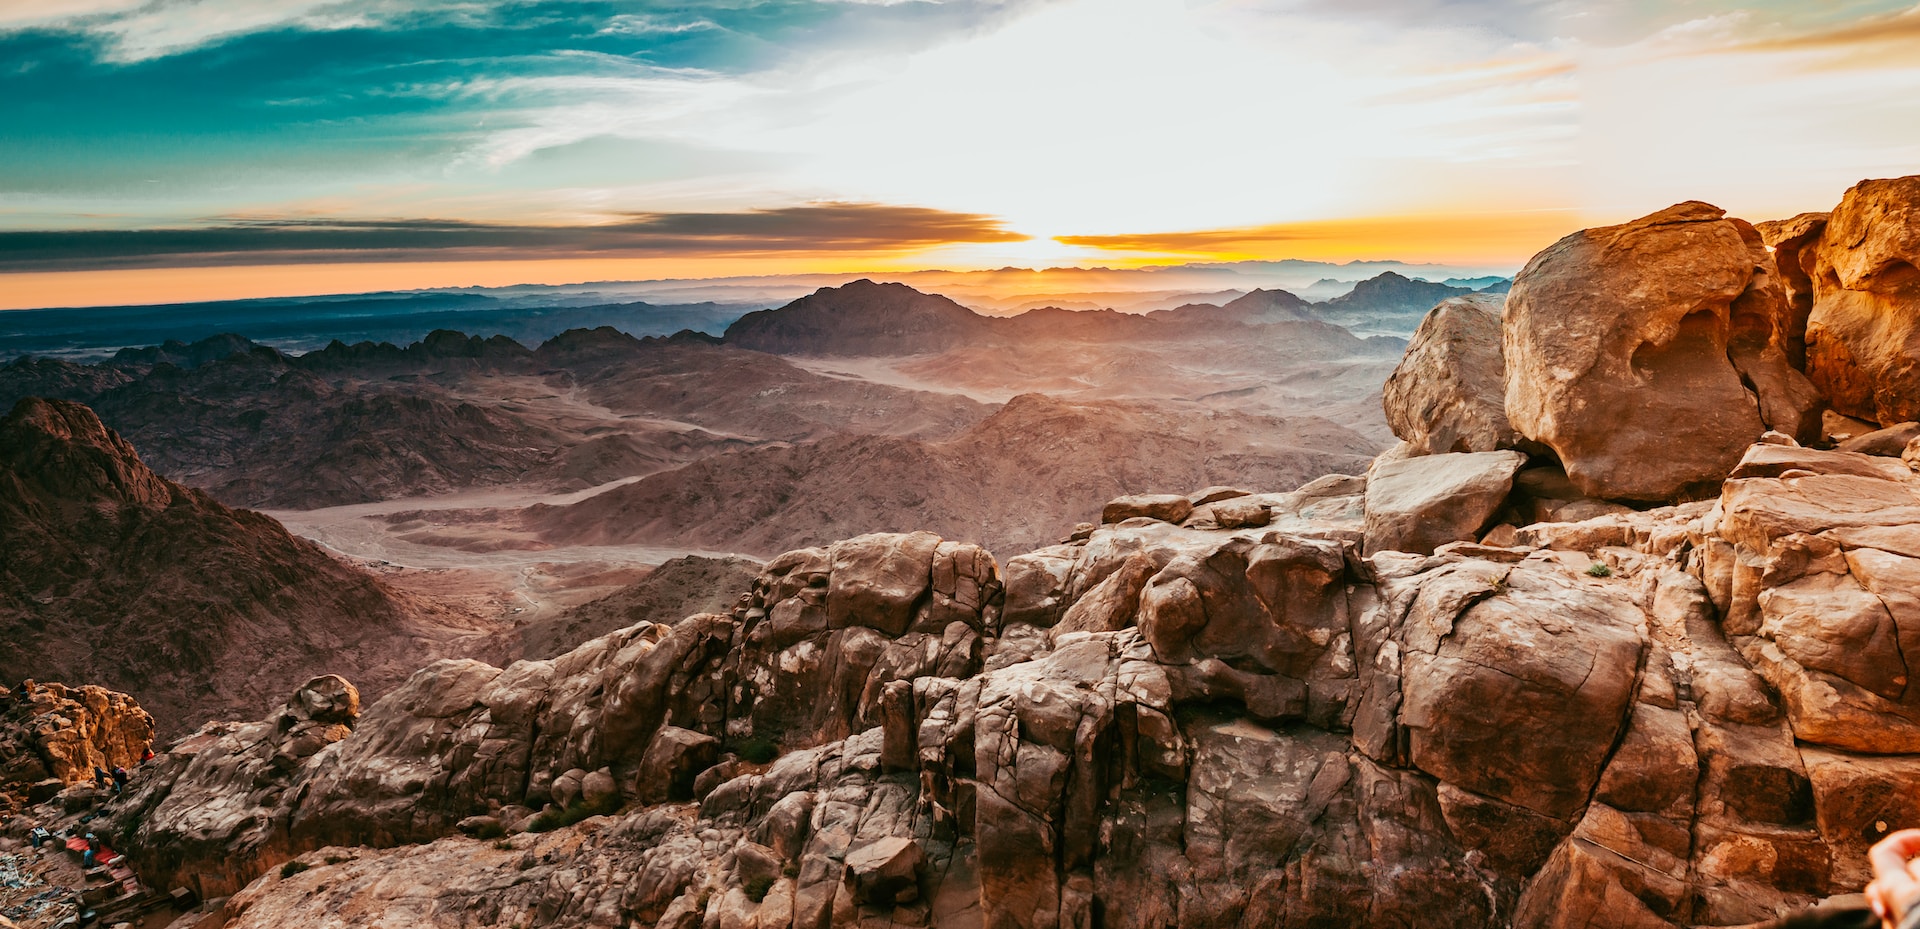 Erkunden Sie die Halbinsel Sinai mit ihren faszinierenden Gebirgen und Wf¼sten.